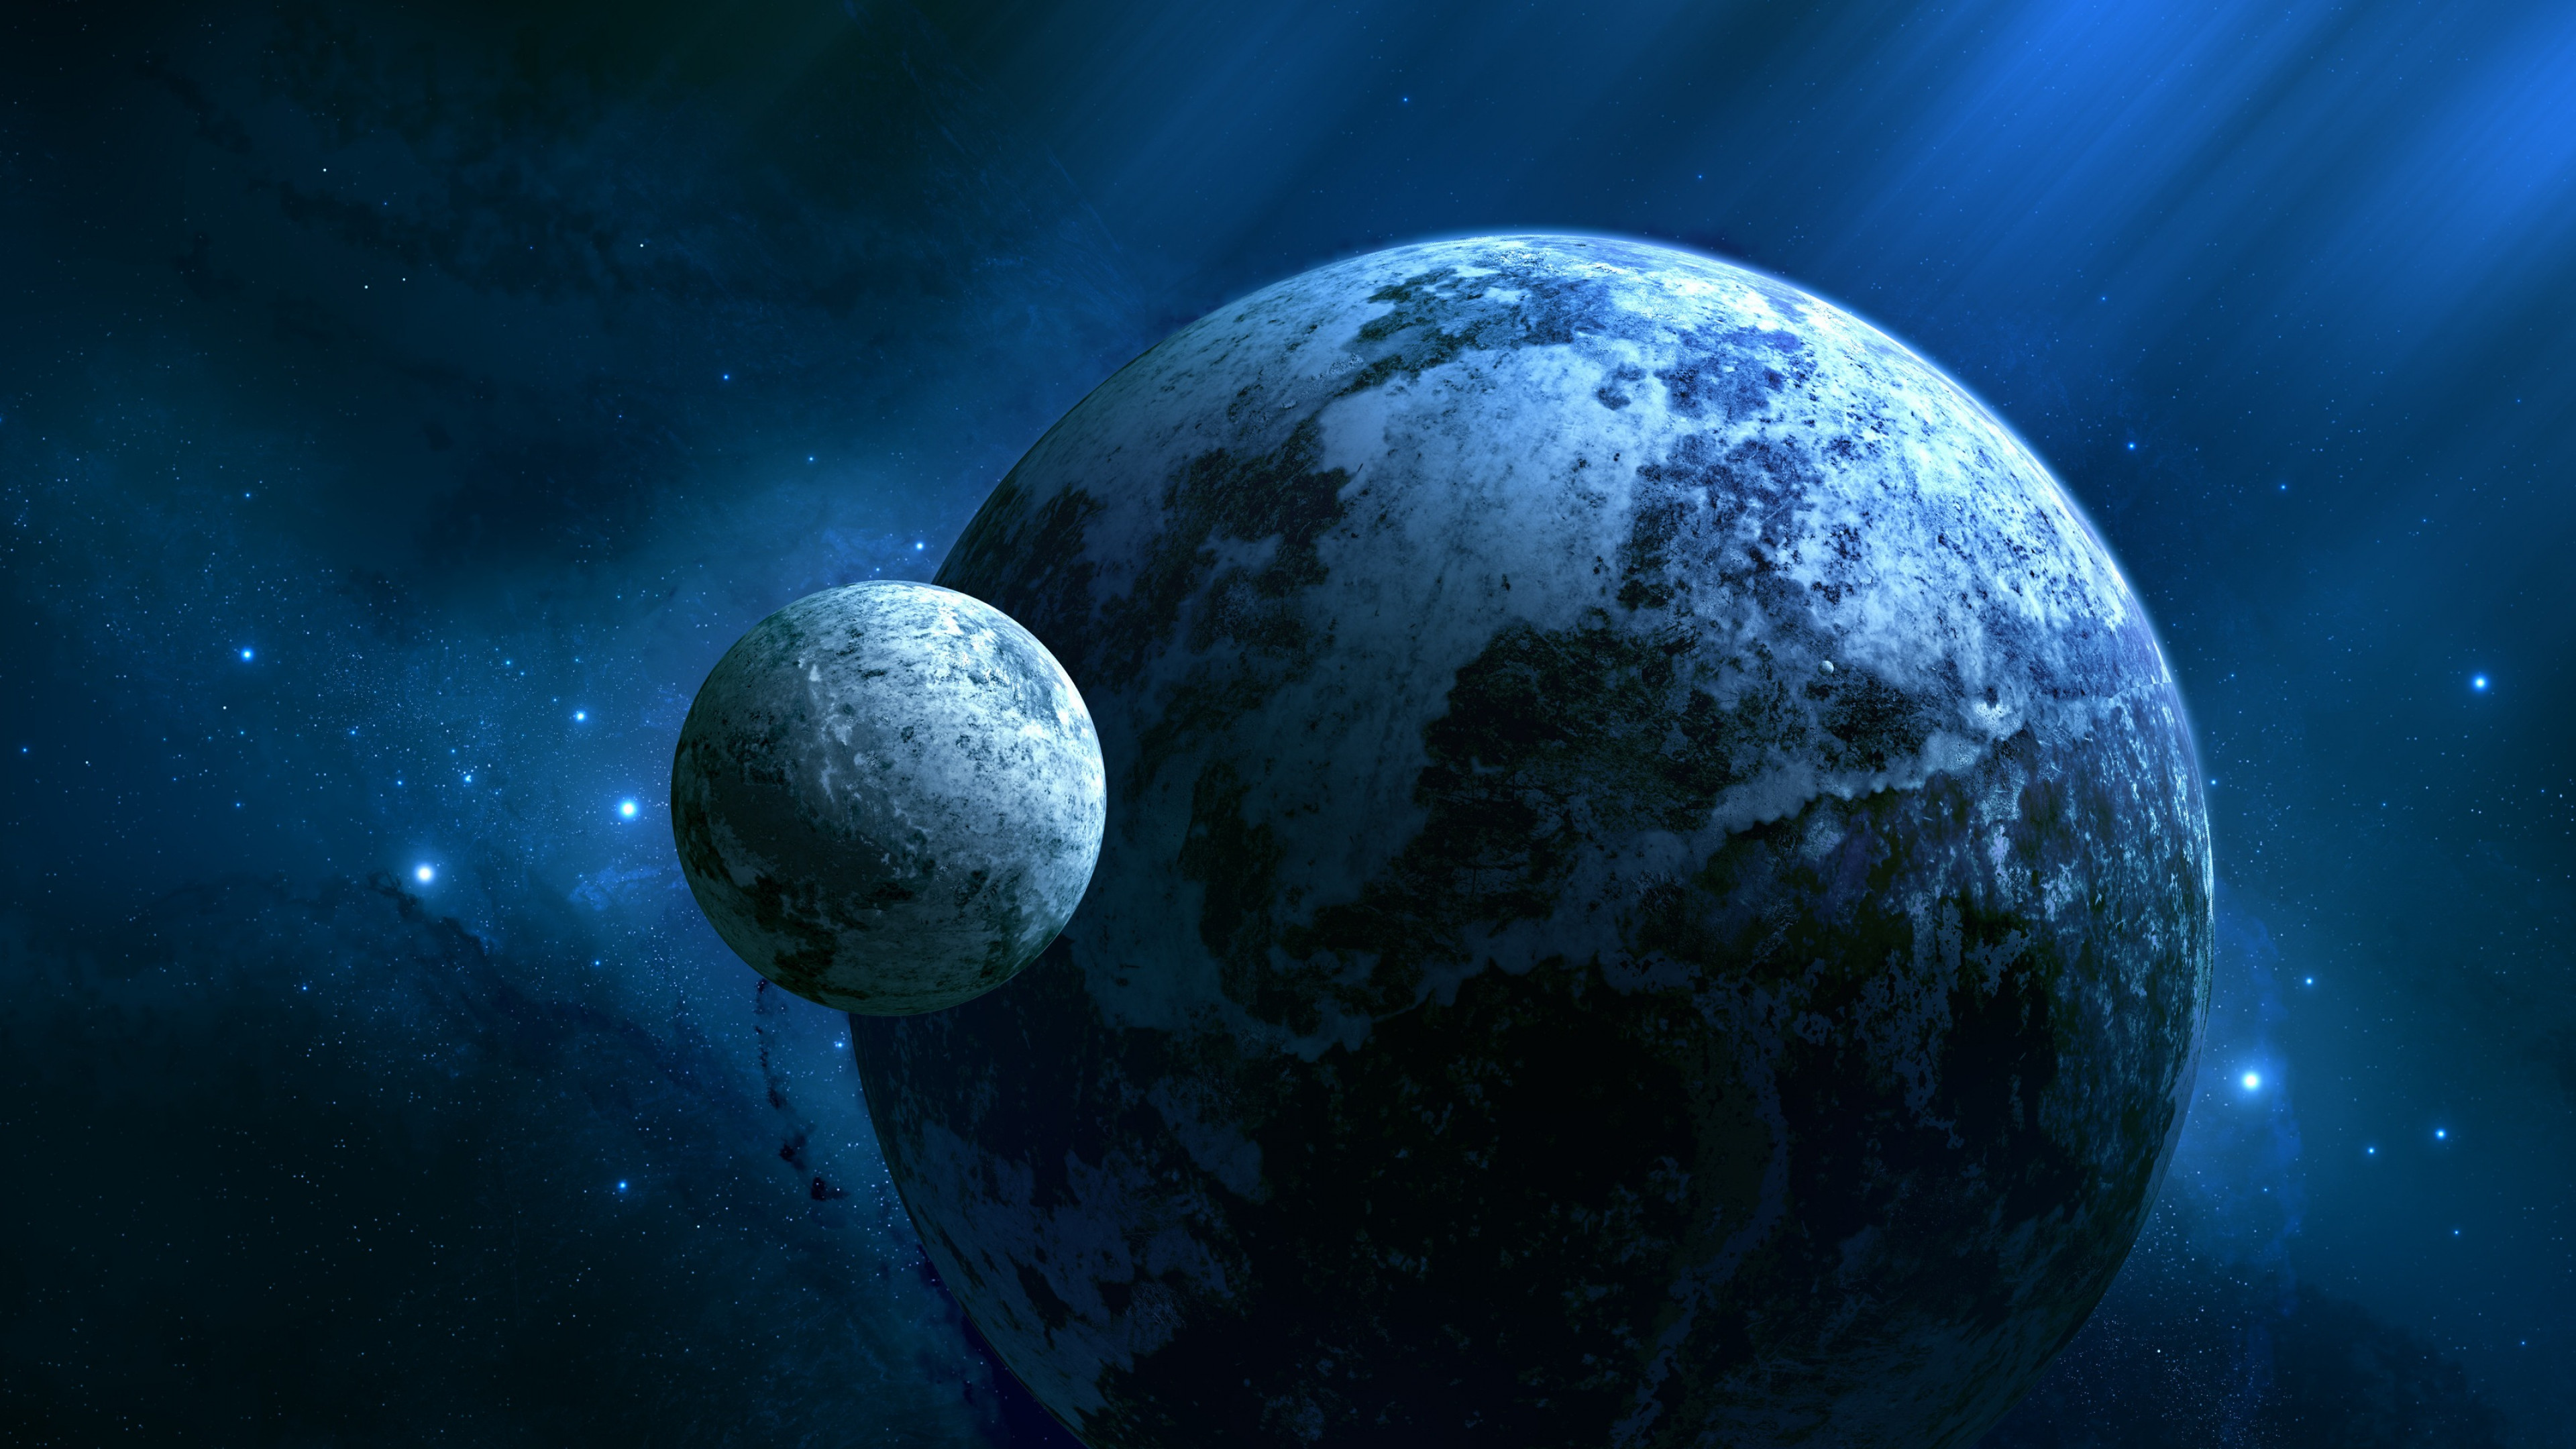 Обои на рабочий стол планеты. Кеплер 452 b. Кеплер 452 b Планета. Экзопланета Kepler 452b. Kepler 452b Планета есть жизнь.